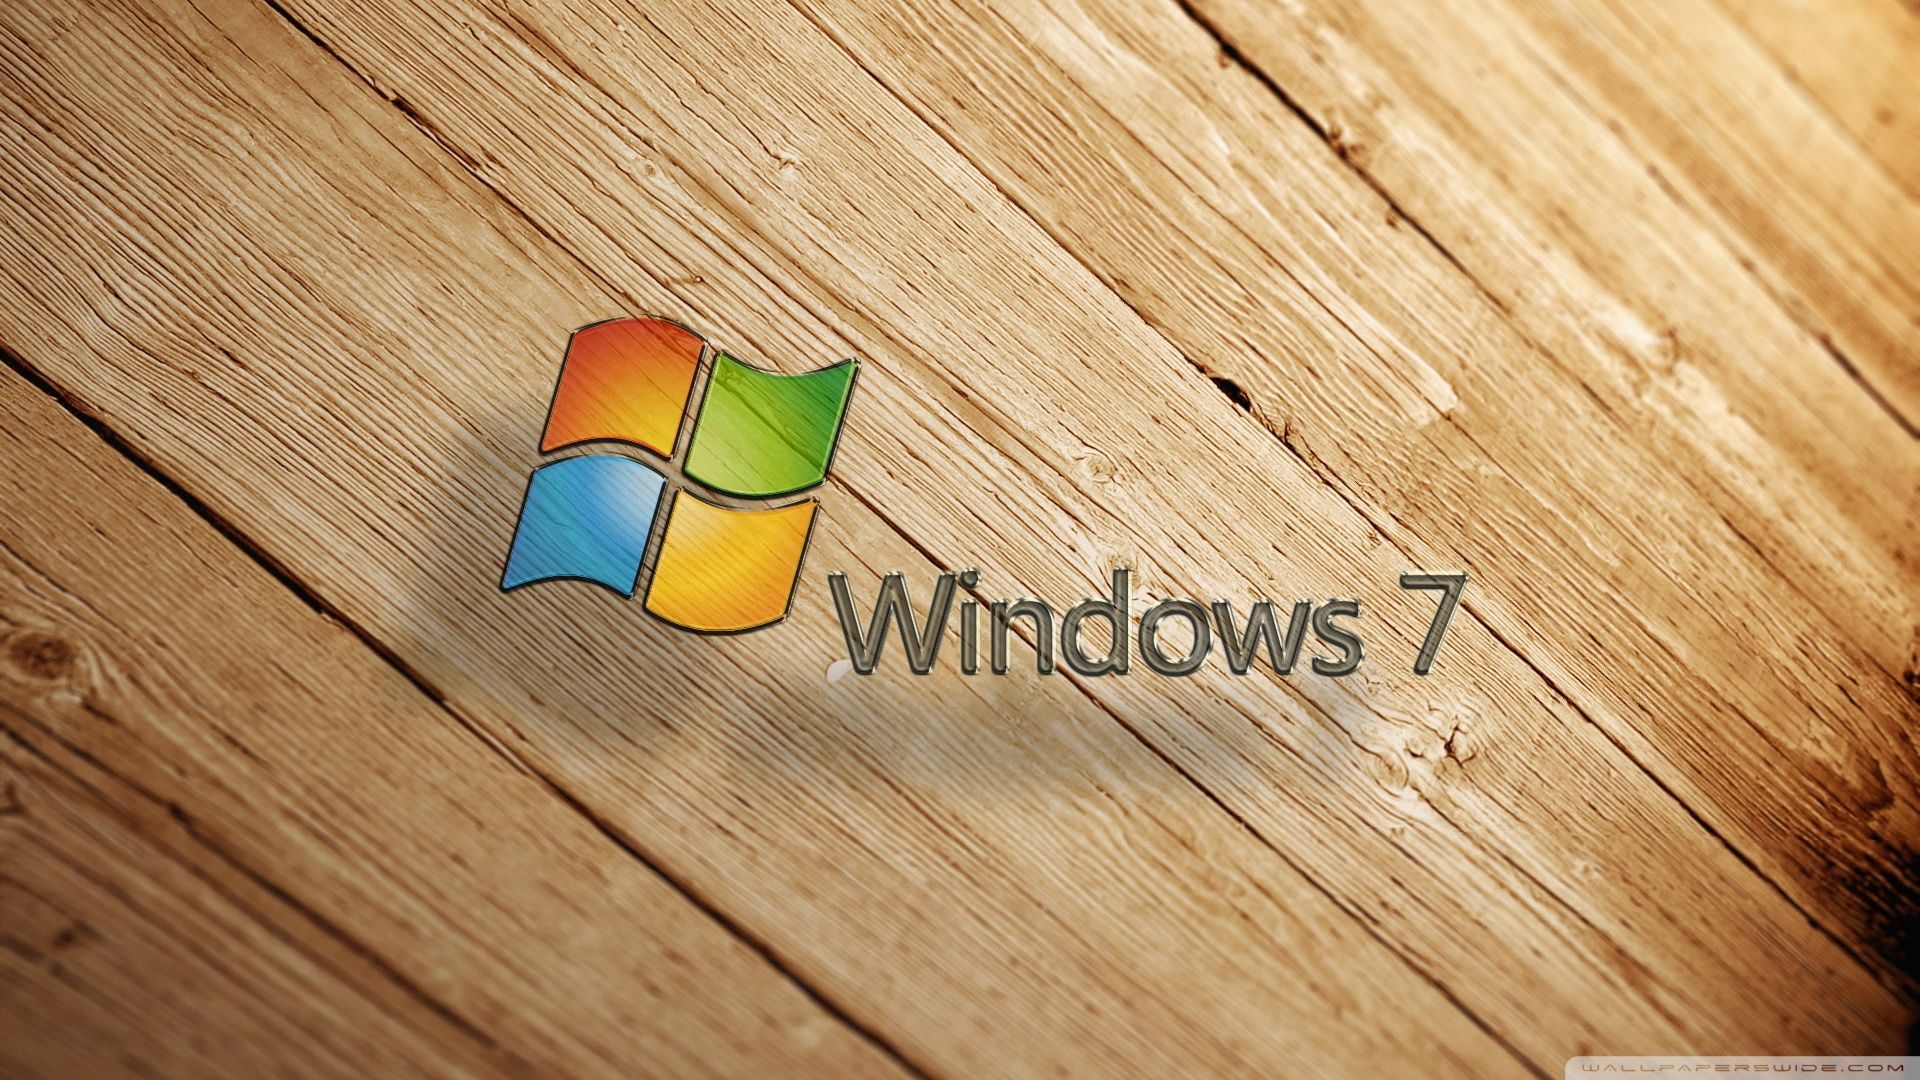 Windows 7 Wood Wallpaper Full HD 1920x1080 - Free wallpaper full